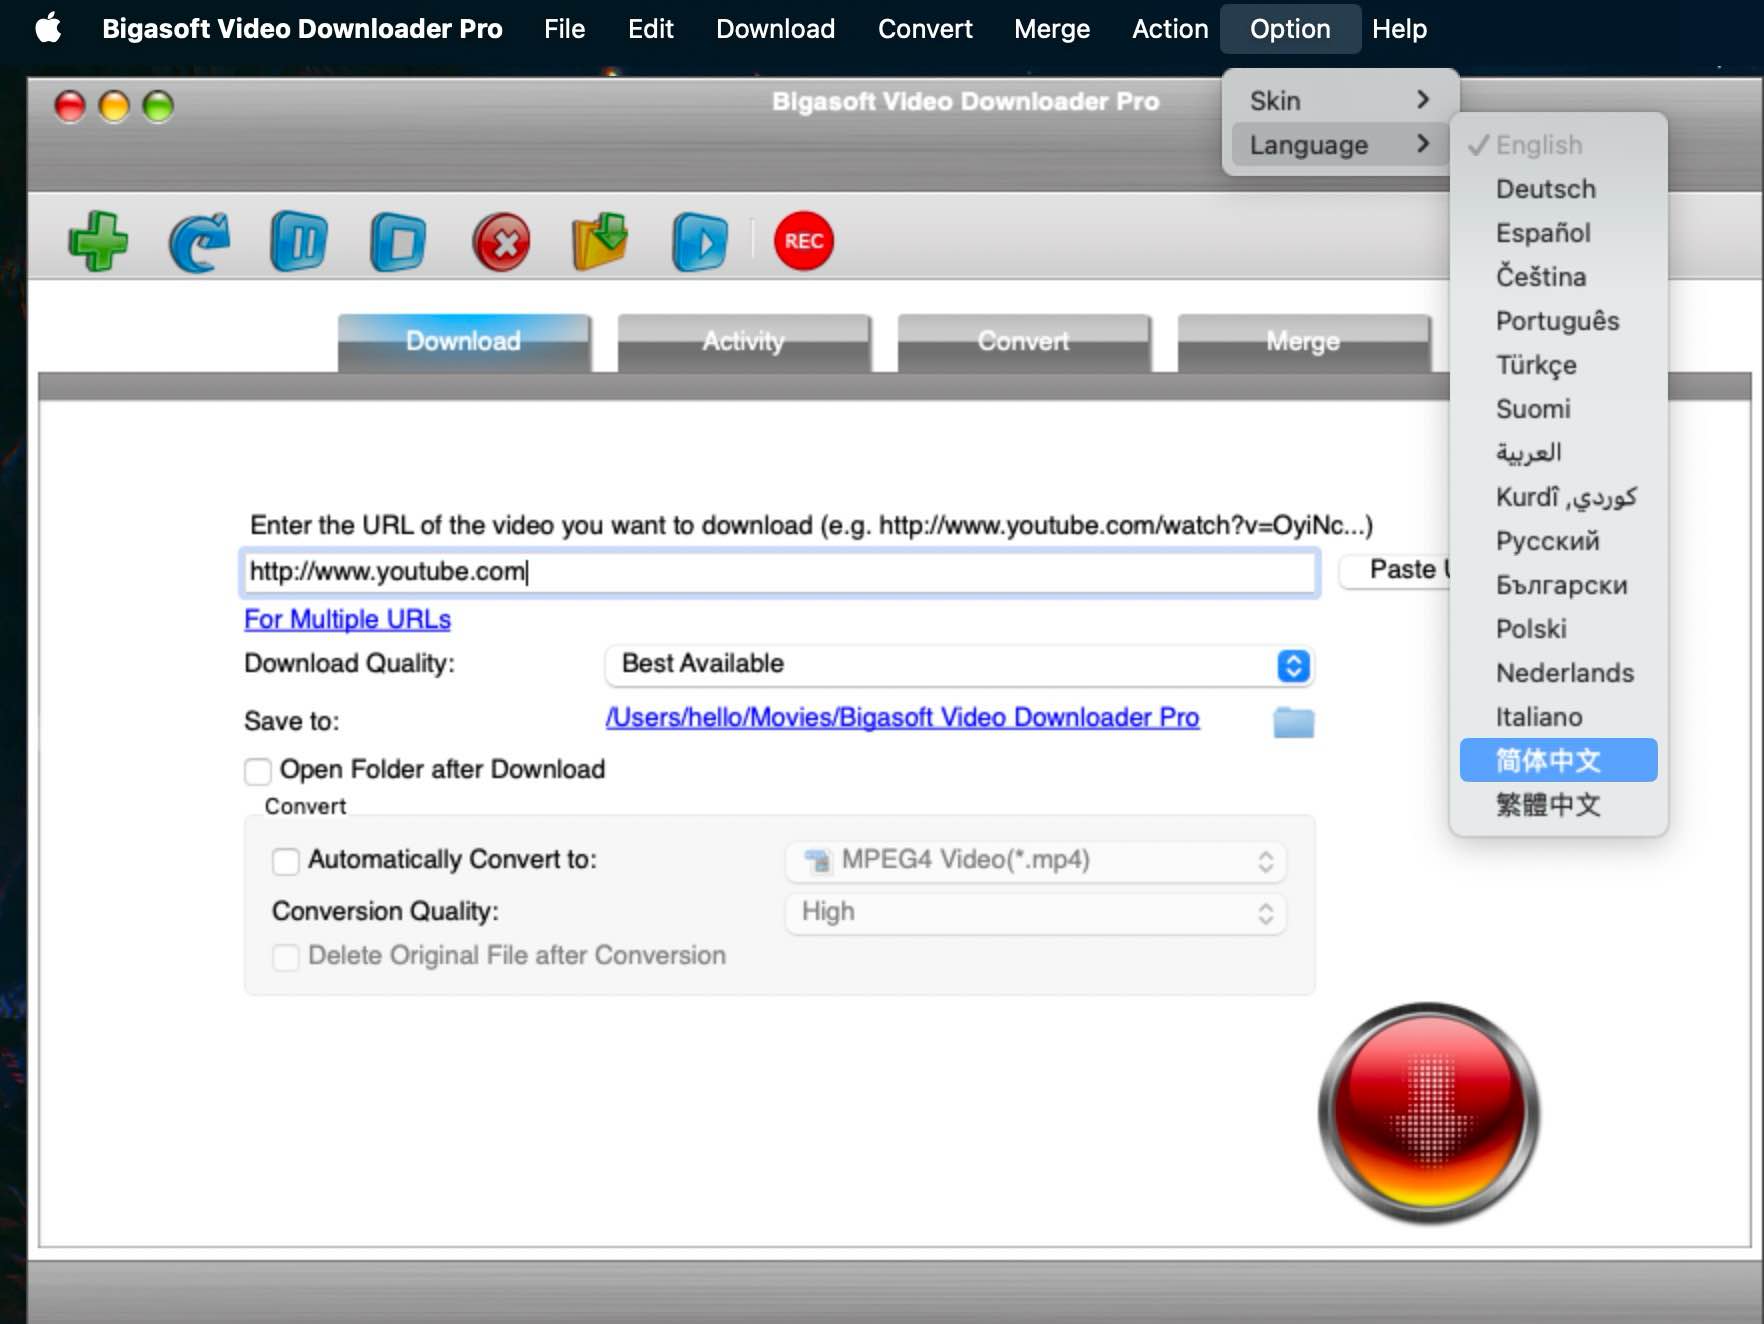 Bigasoft Video Downloader Pro for Mac v3.26.1 mac视频下载工具 苹果电脑